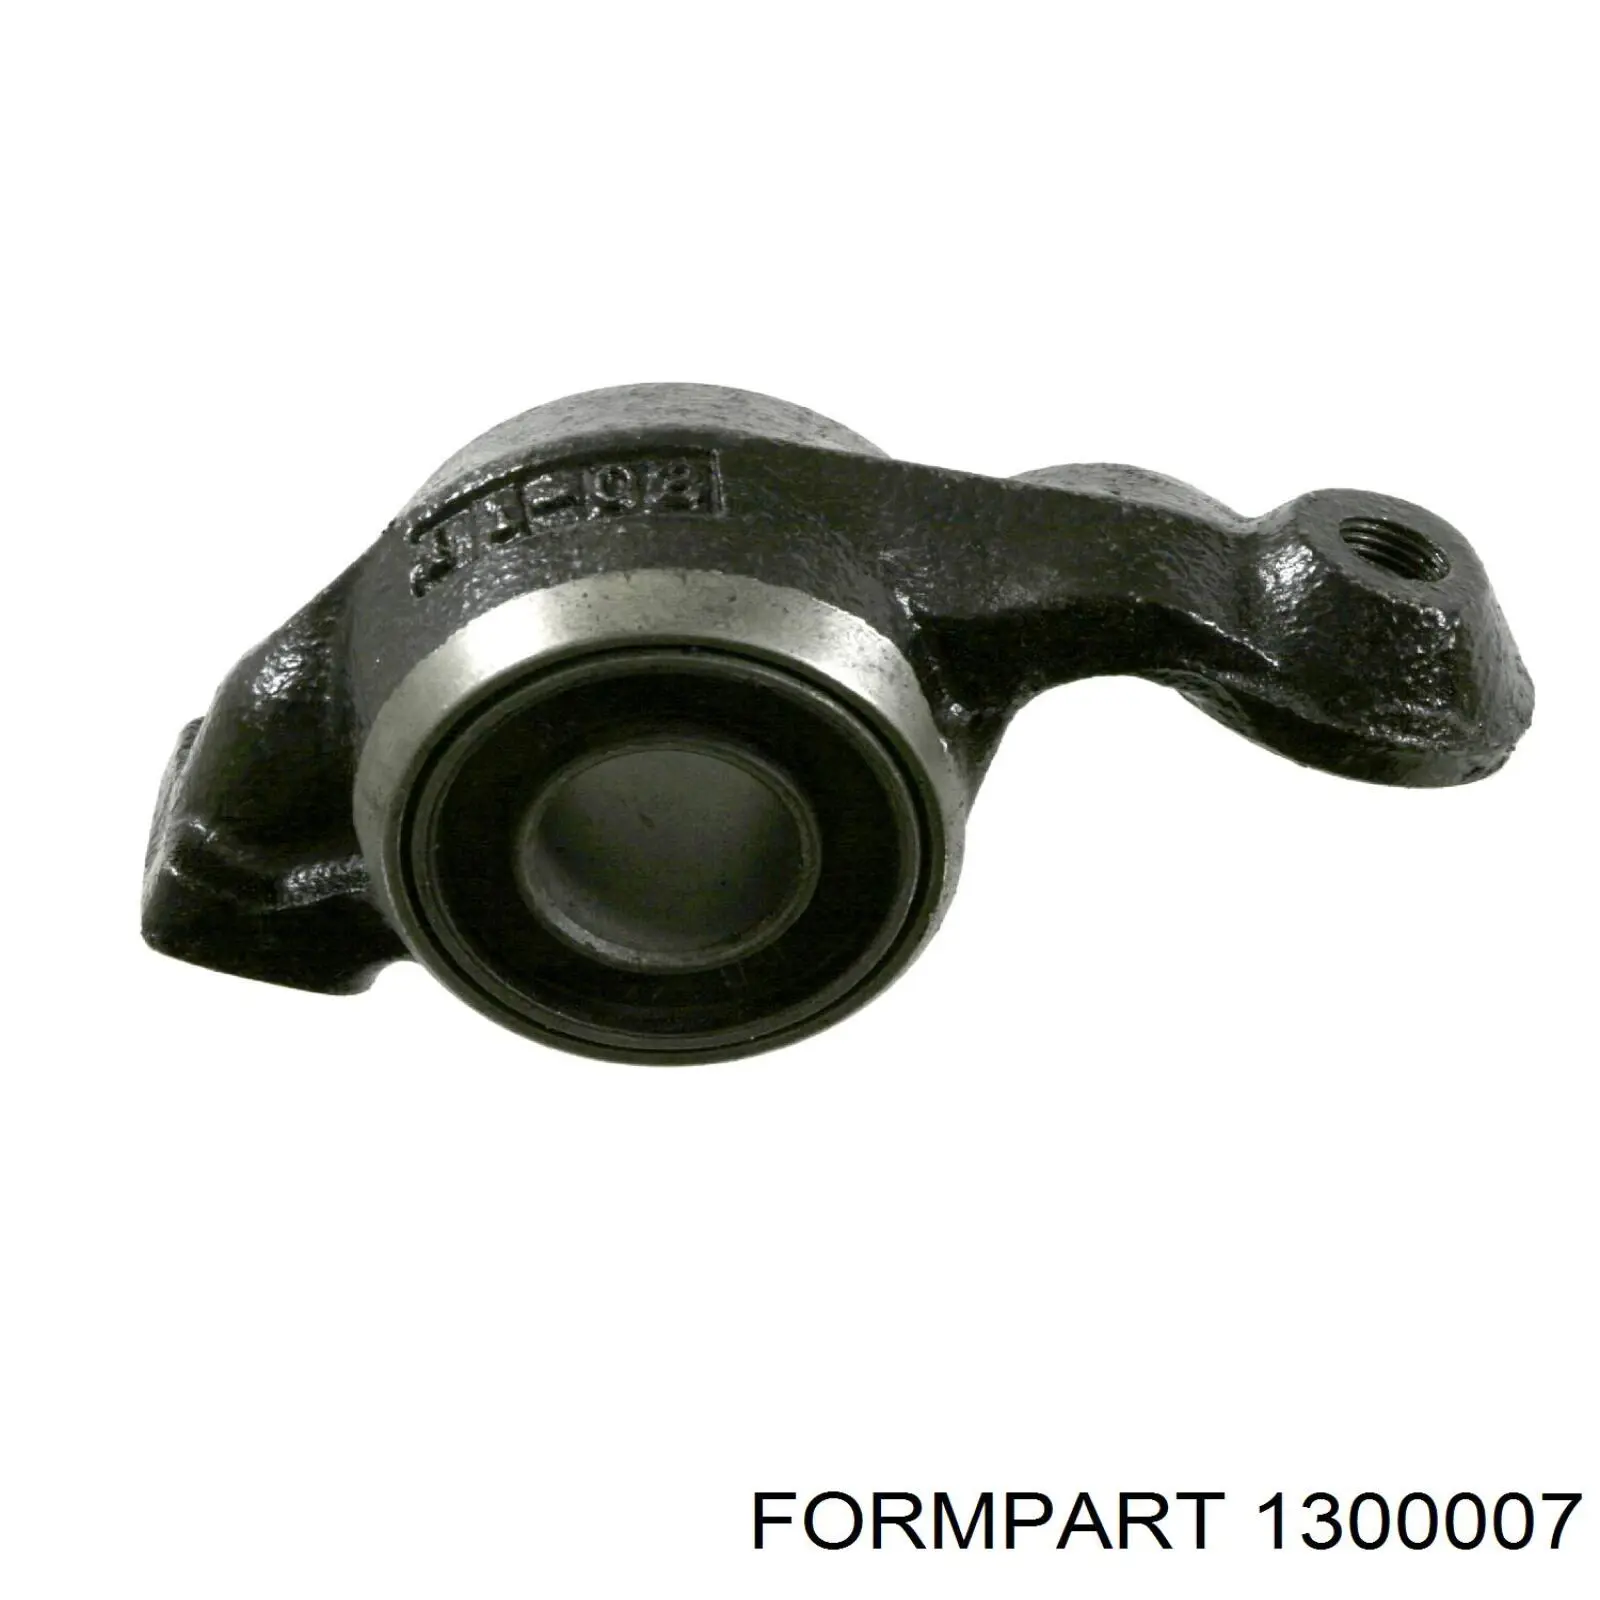 1300007 Formpart/Otoform silentblock de suspensión delantero inferior